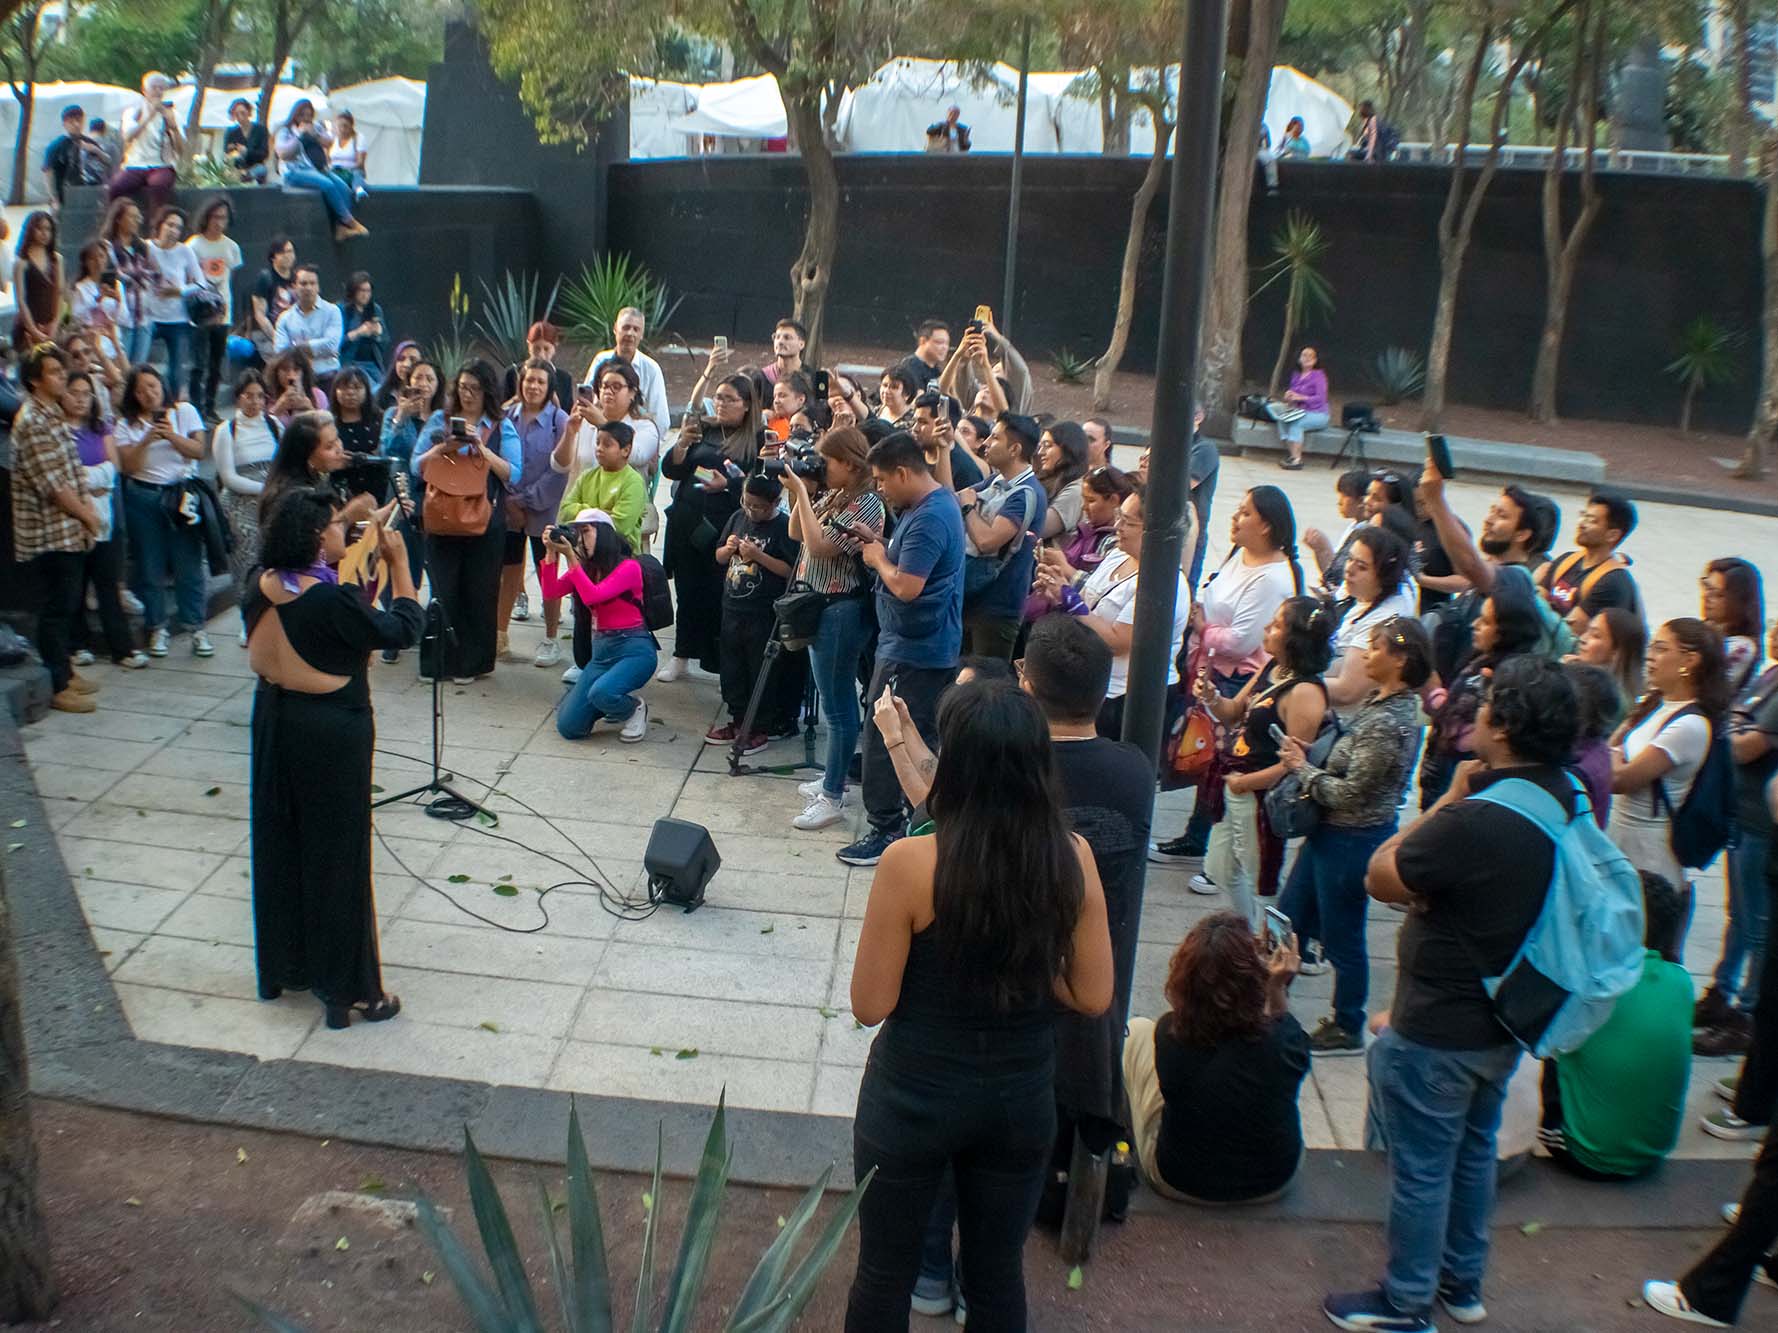 Frente al Monumento a la Revolución, la reconocida cantautora mexicana y destacada feminista Vivir Quintana ofreció un íntimo concierto acústico para mantener una cercanía especial con sus seguidores. Al momento, reafirmó su postura política a través de letras y estribillos como declaraciones musicales hacia las mujeres como la primera presidenta electa en México.